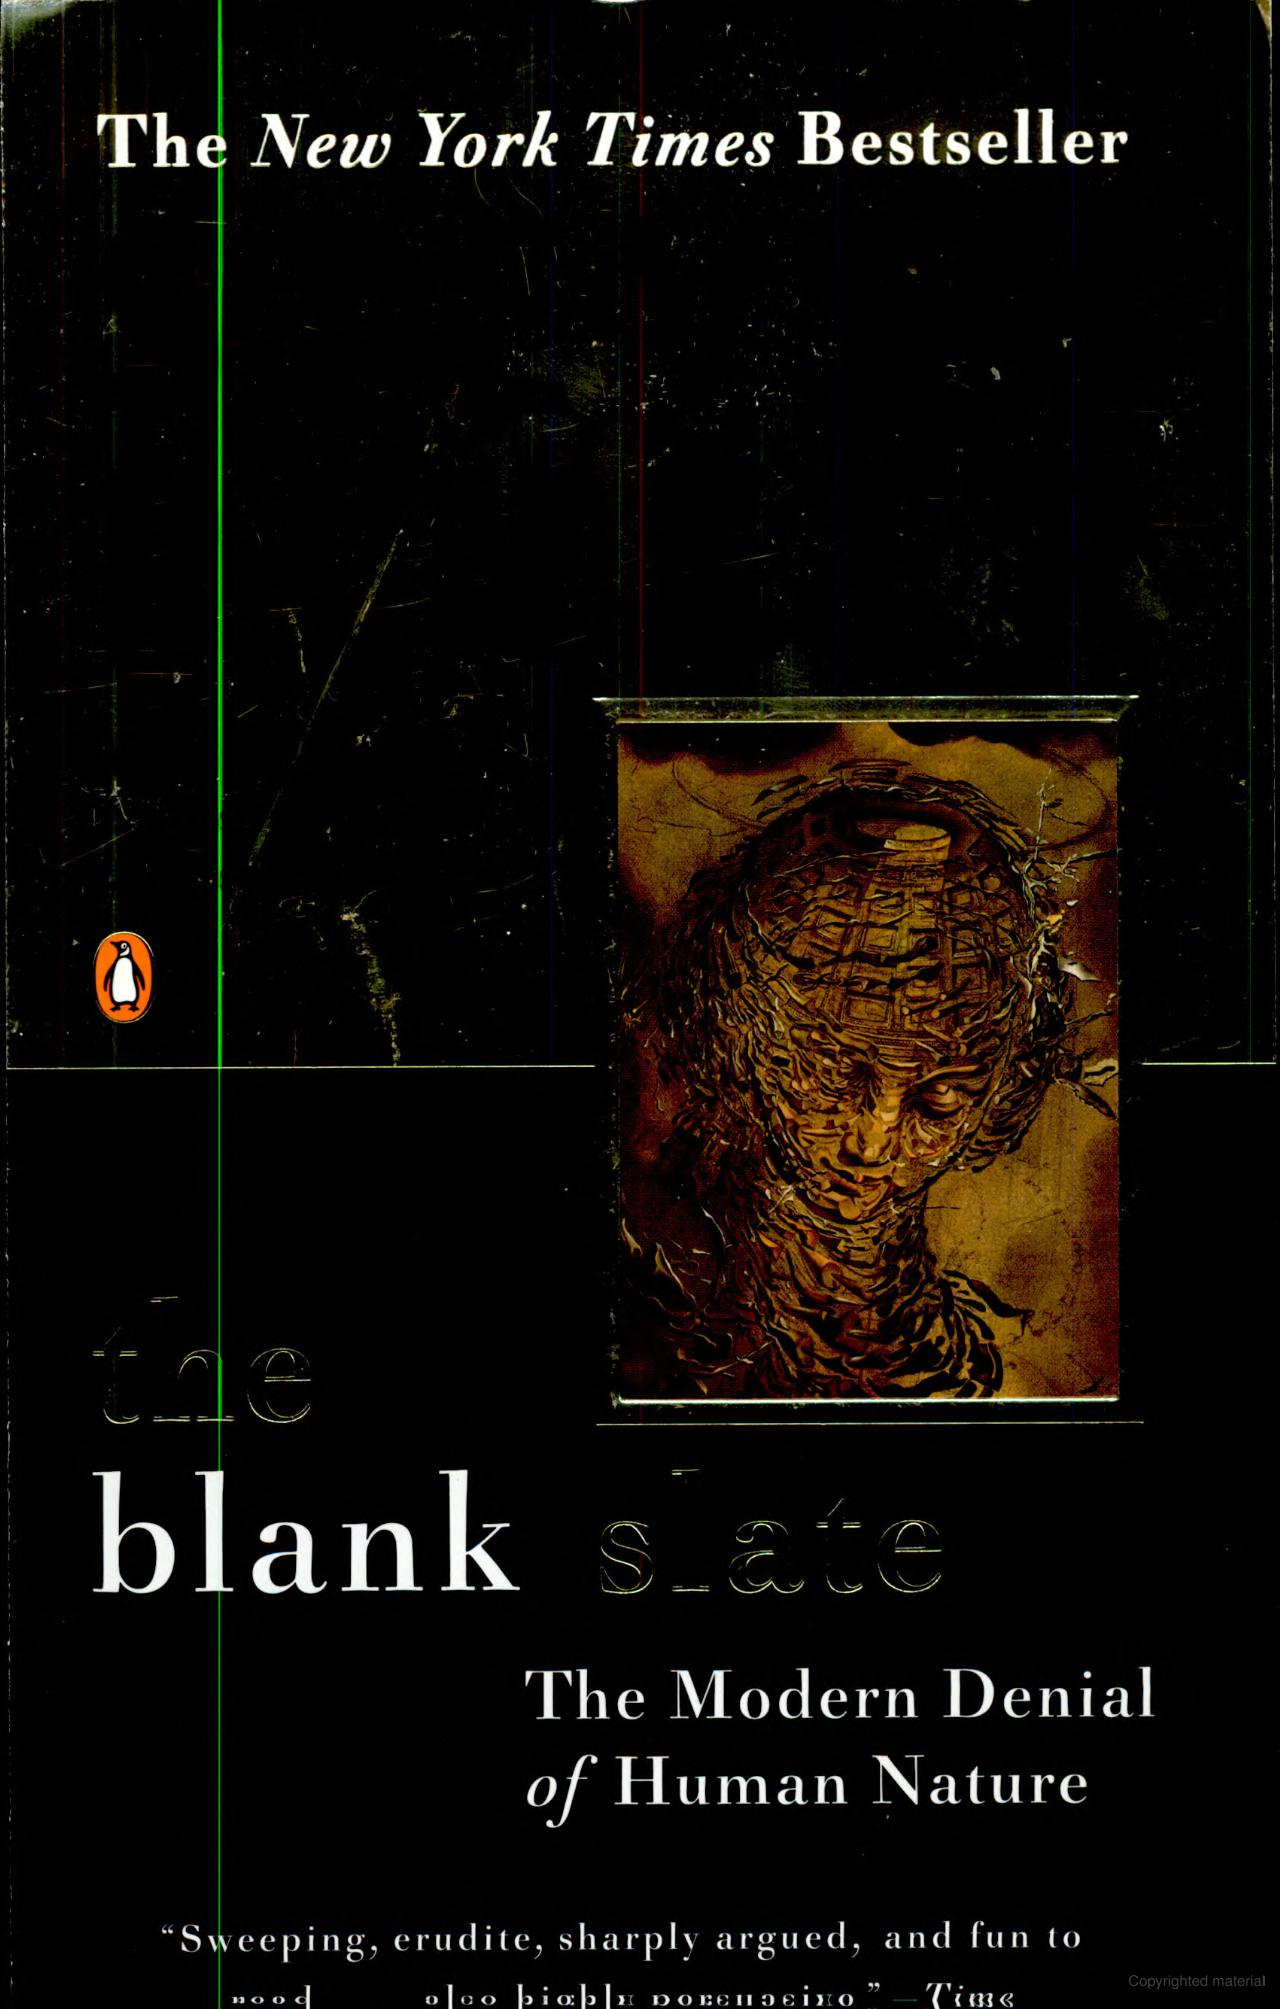 The blank slate (2002, Penguin)